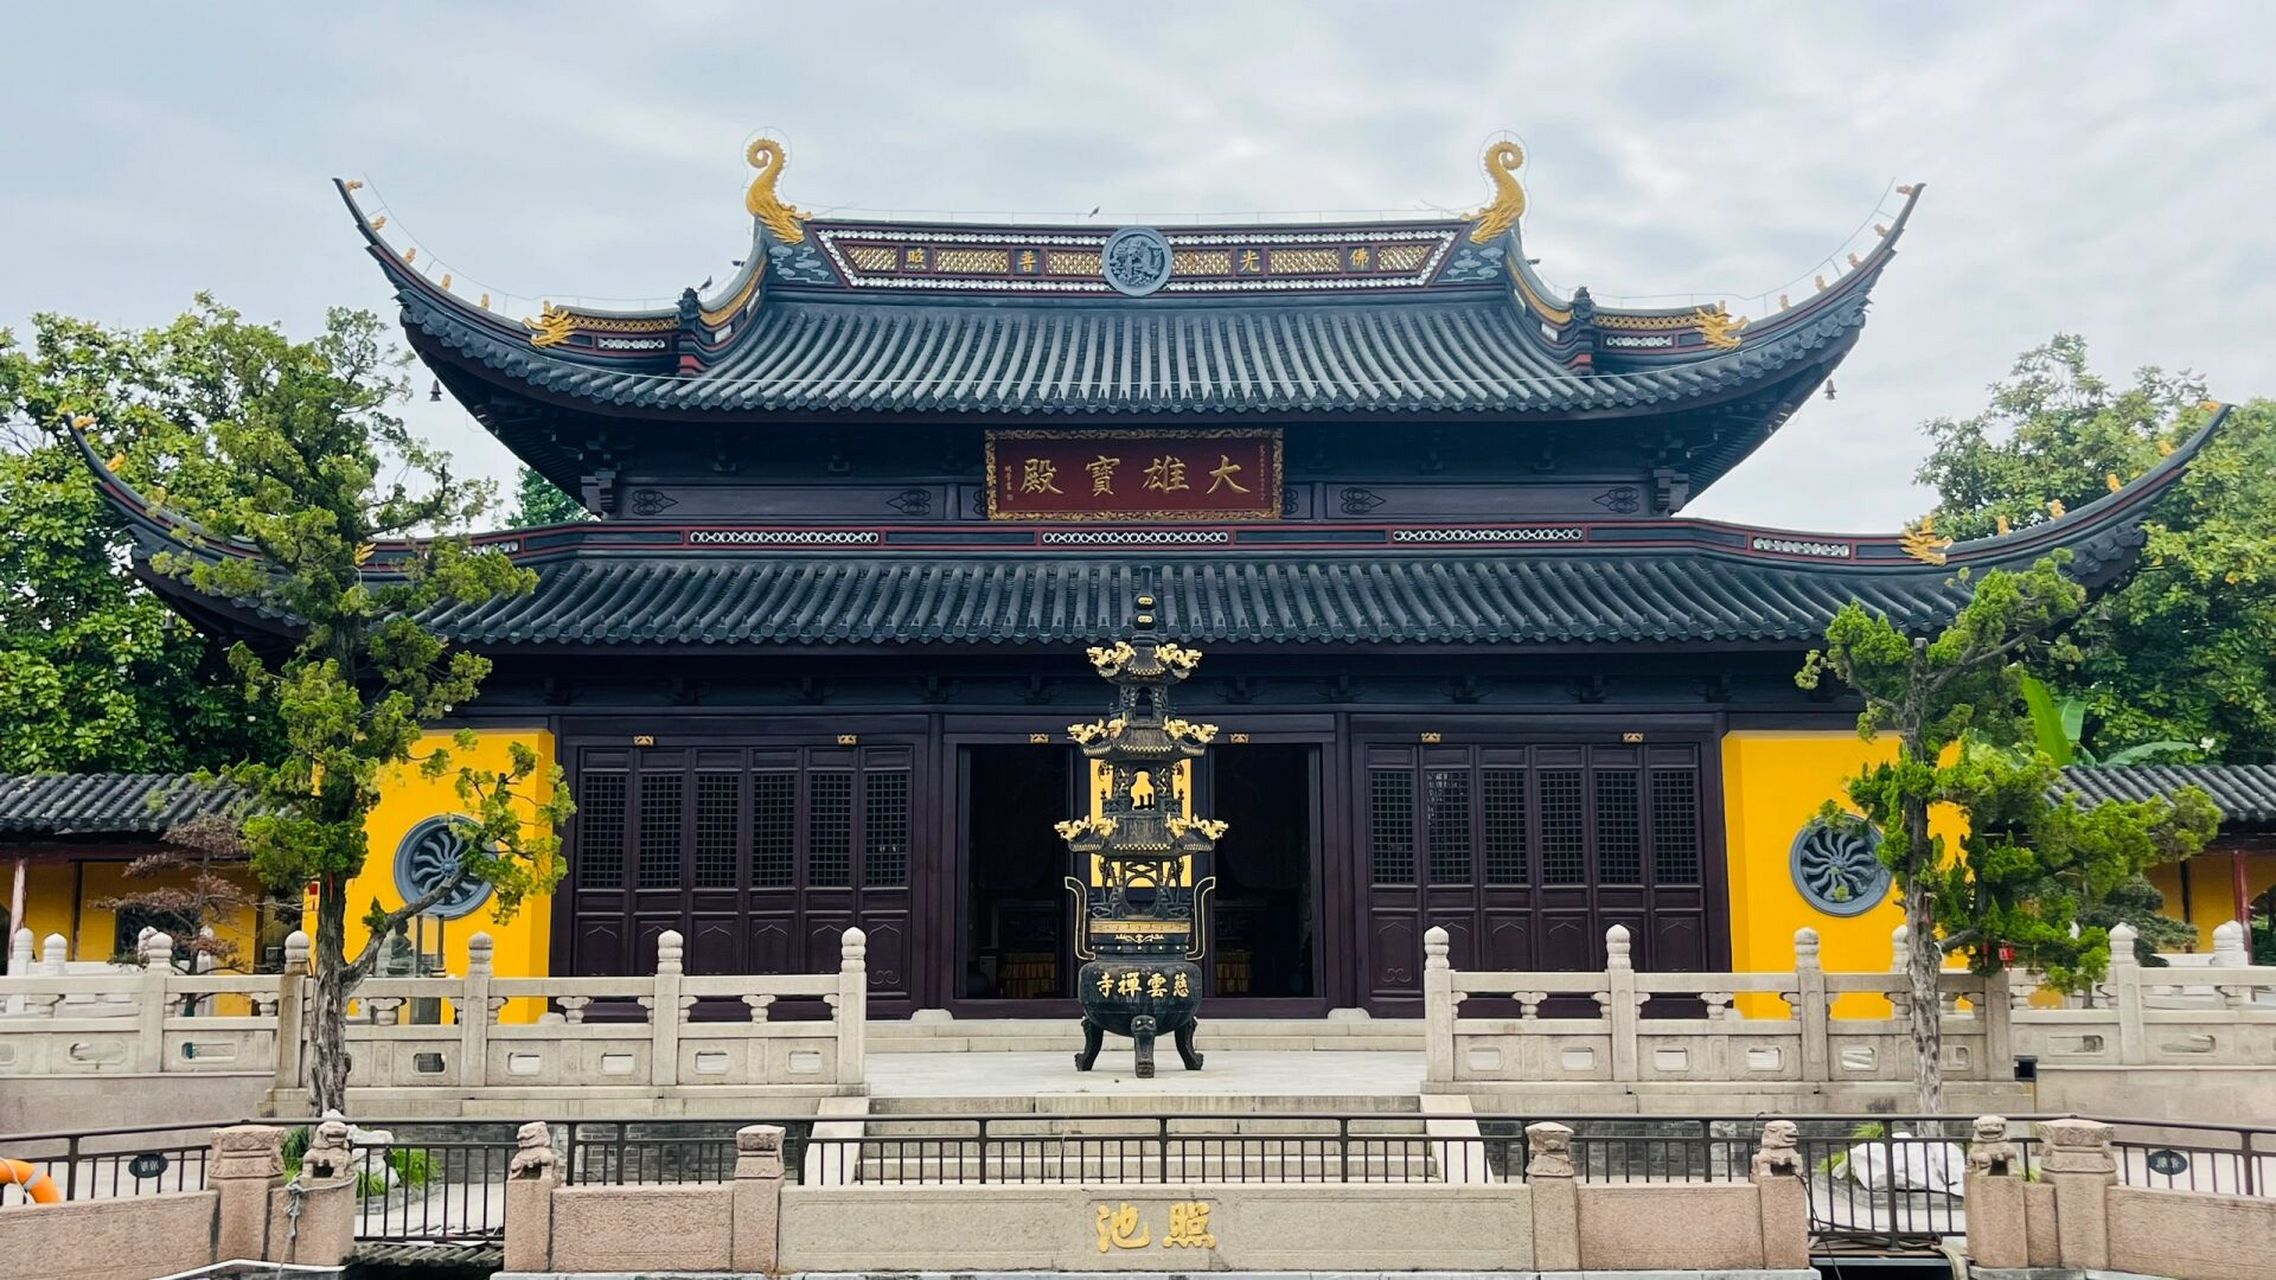 慈云禅寺中的慈云寺塔是最为值得一看的亮点,它是一座砖身木檐楼甘浇